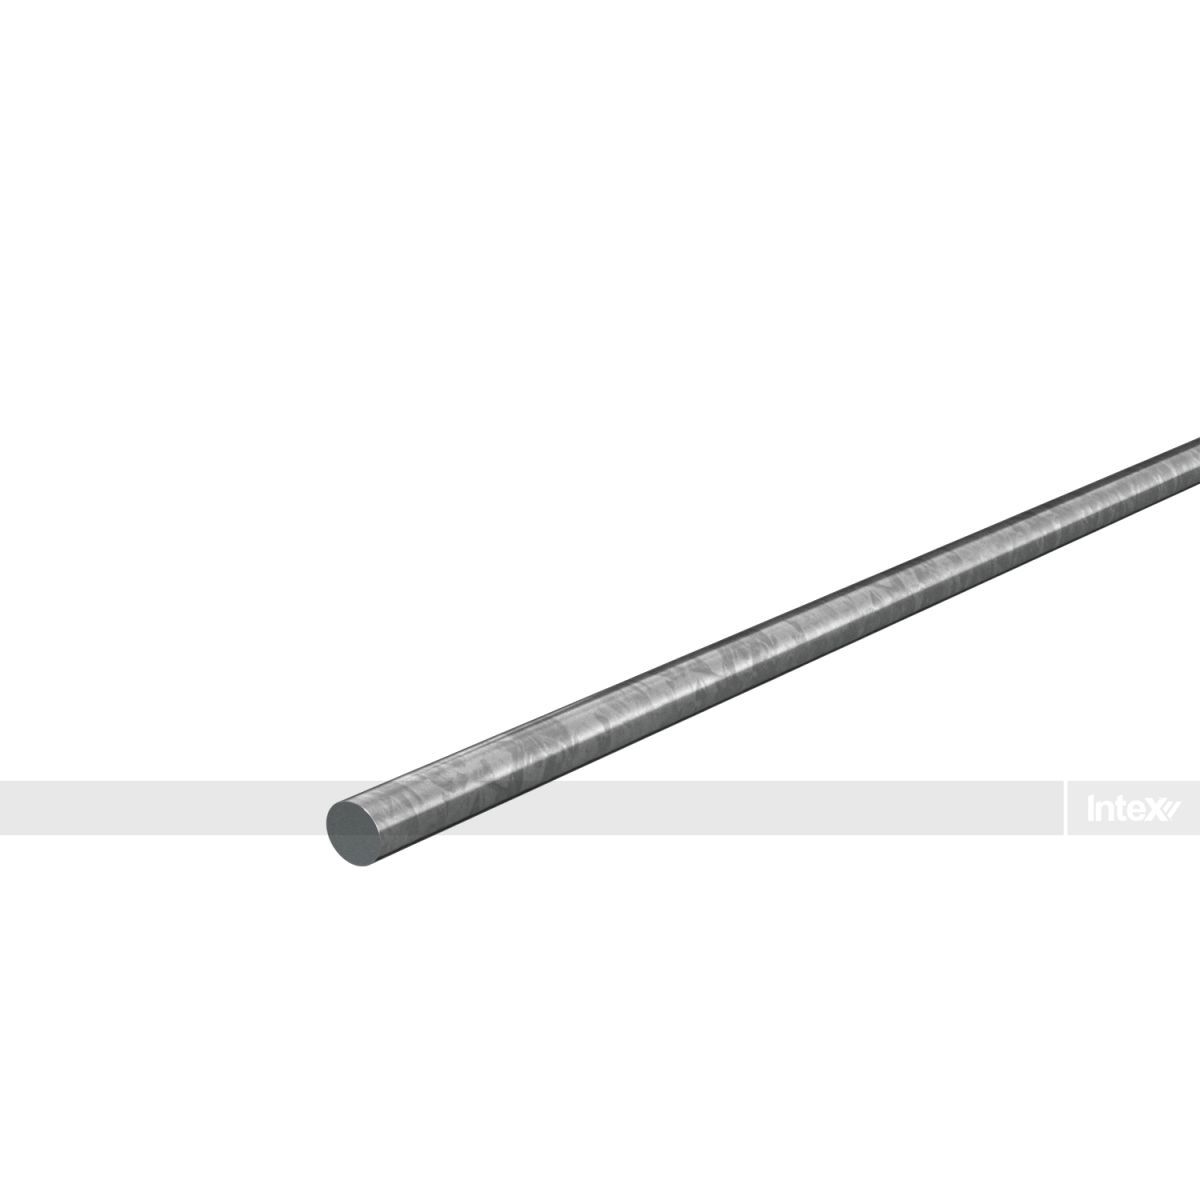 5mm Galvanised Suspension Rod